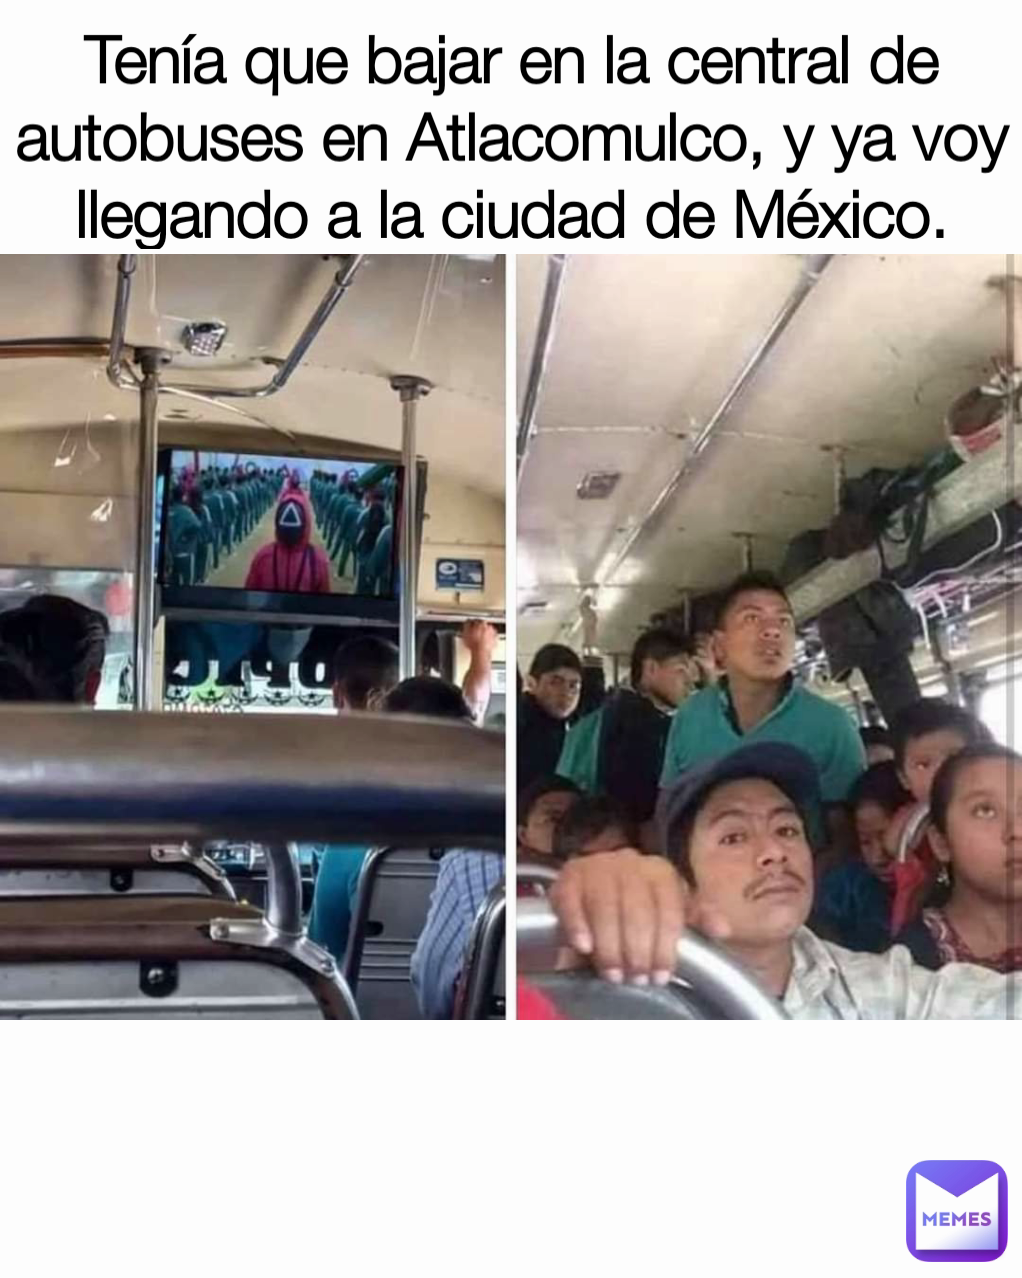 Tenía que bajar en la central de autobuses en Atlacomulco, y ya voy llegando a la ciudad de México.

 Type Text